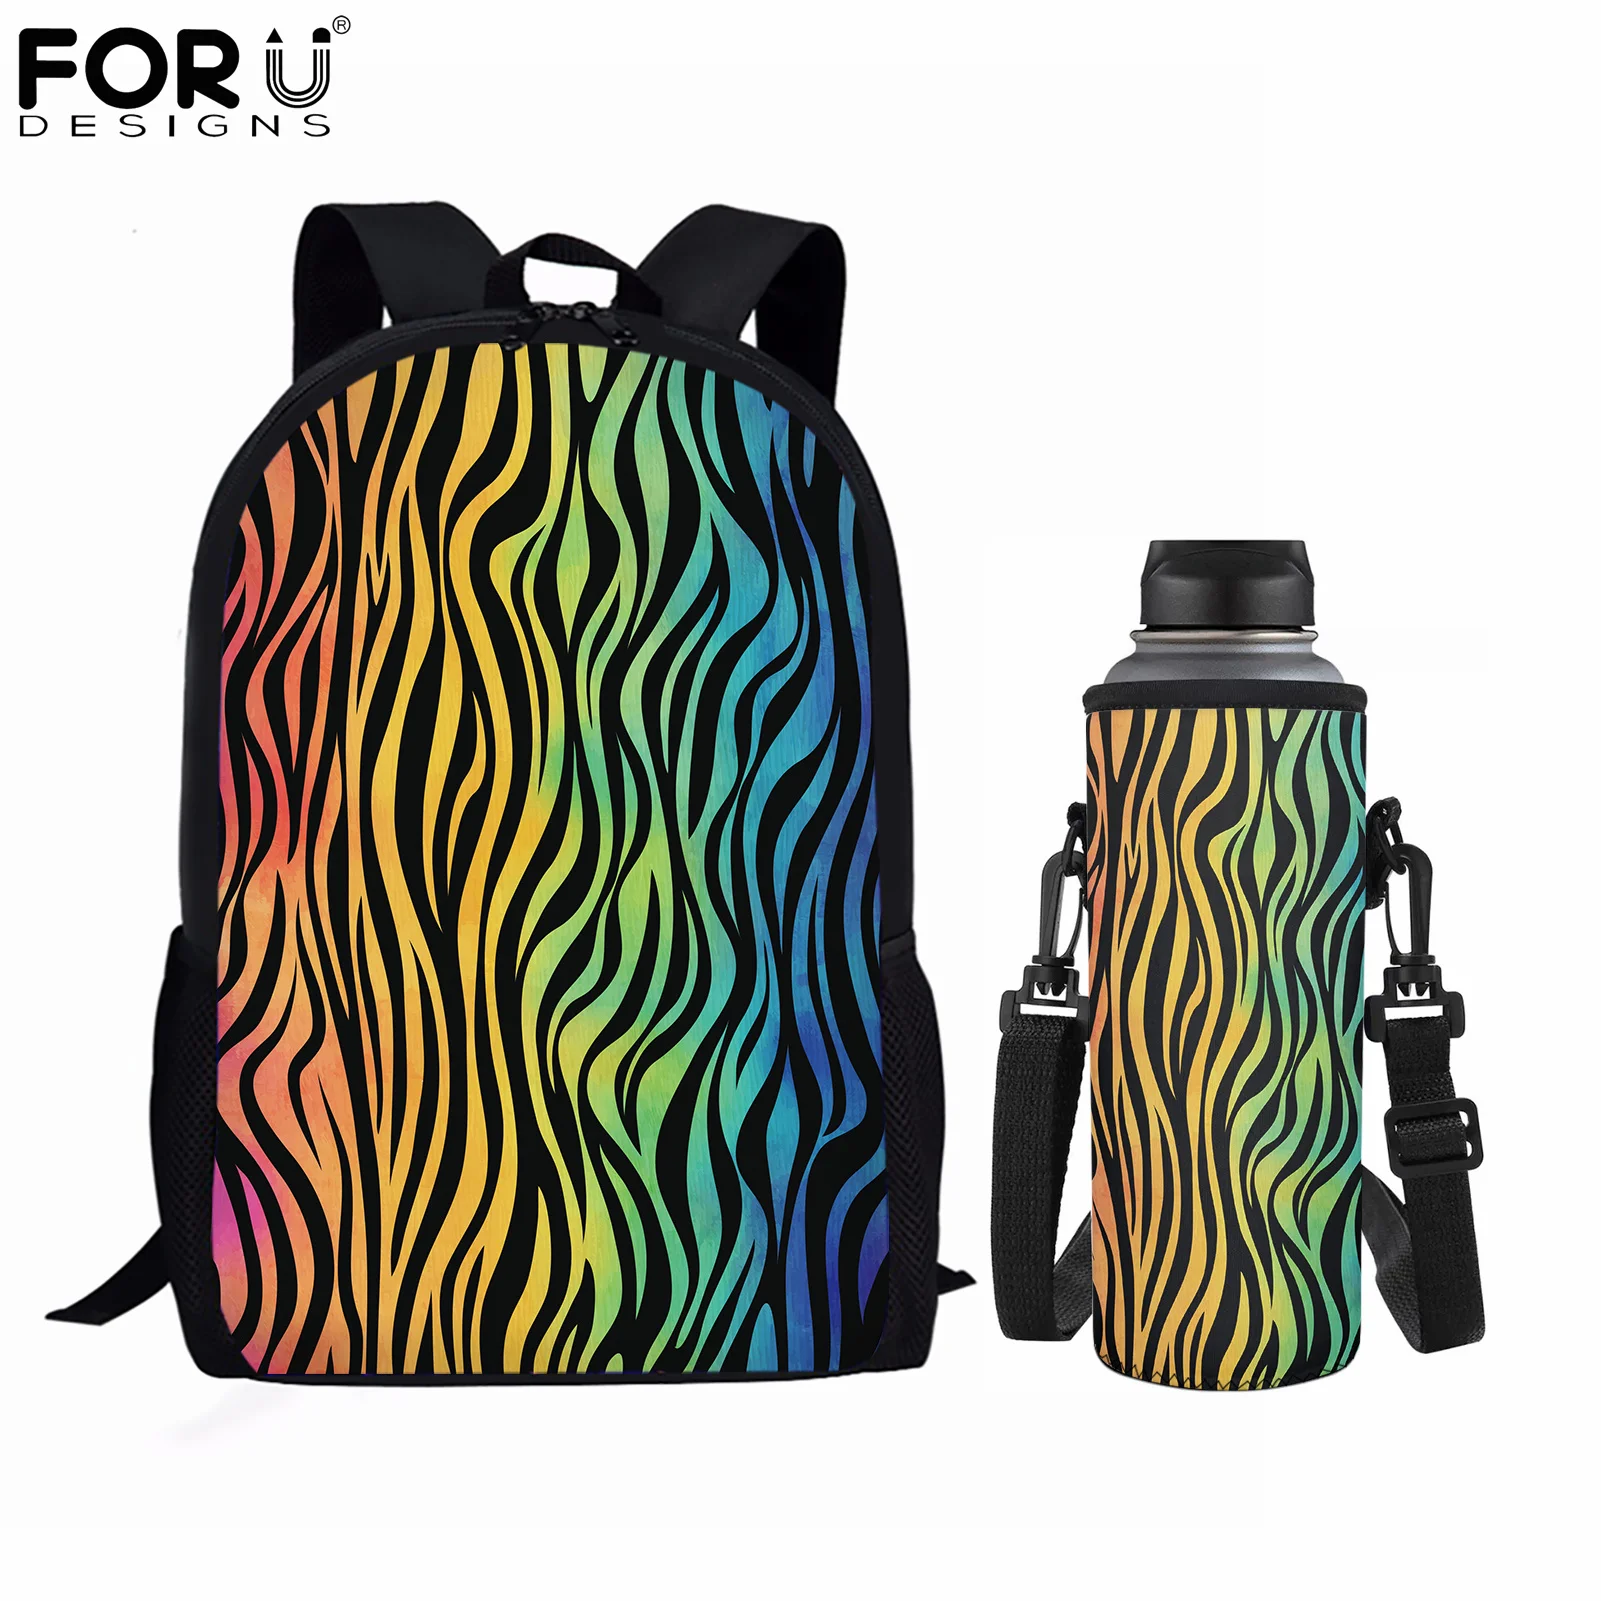 Дорожные сумки для подростков FORUDESIGNS, вместительные рюкзаки с 3D градиентом и принтом маркировки, чехлы для бутылок с водой, набор из 2 предме...